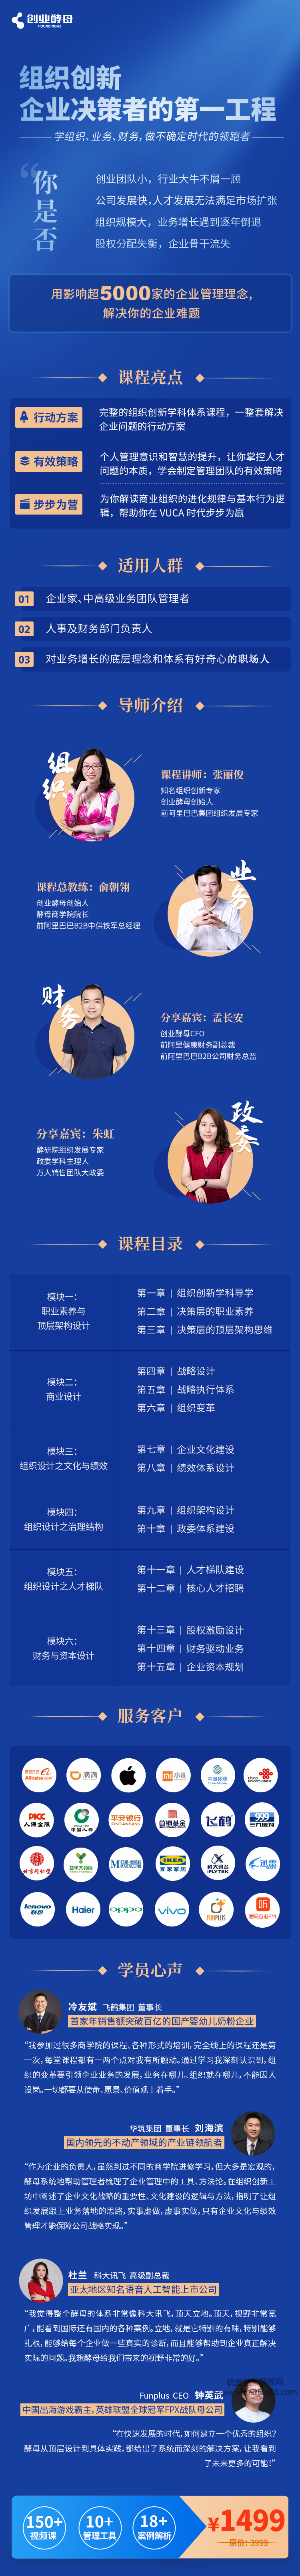 张丽俊《组织创新，企业决策者的第一工程》